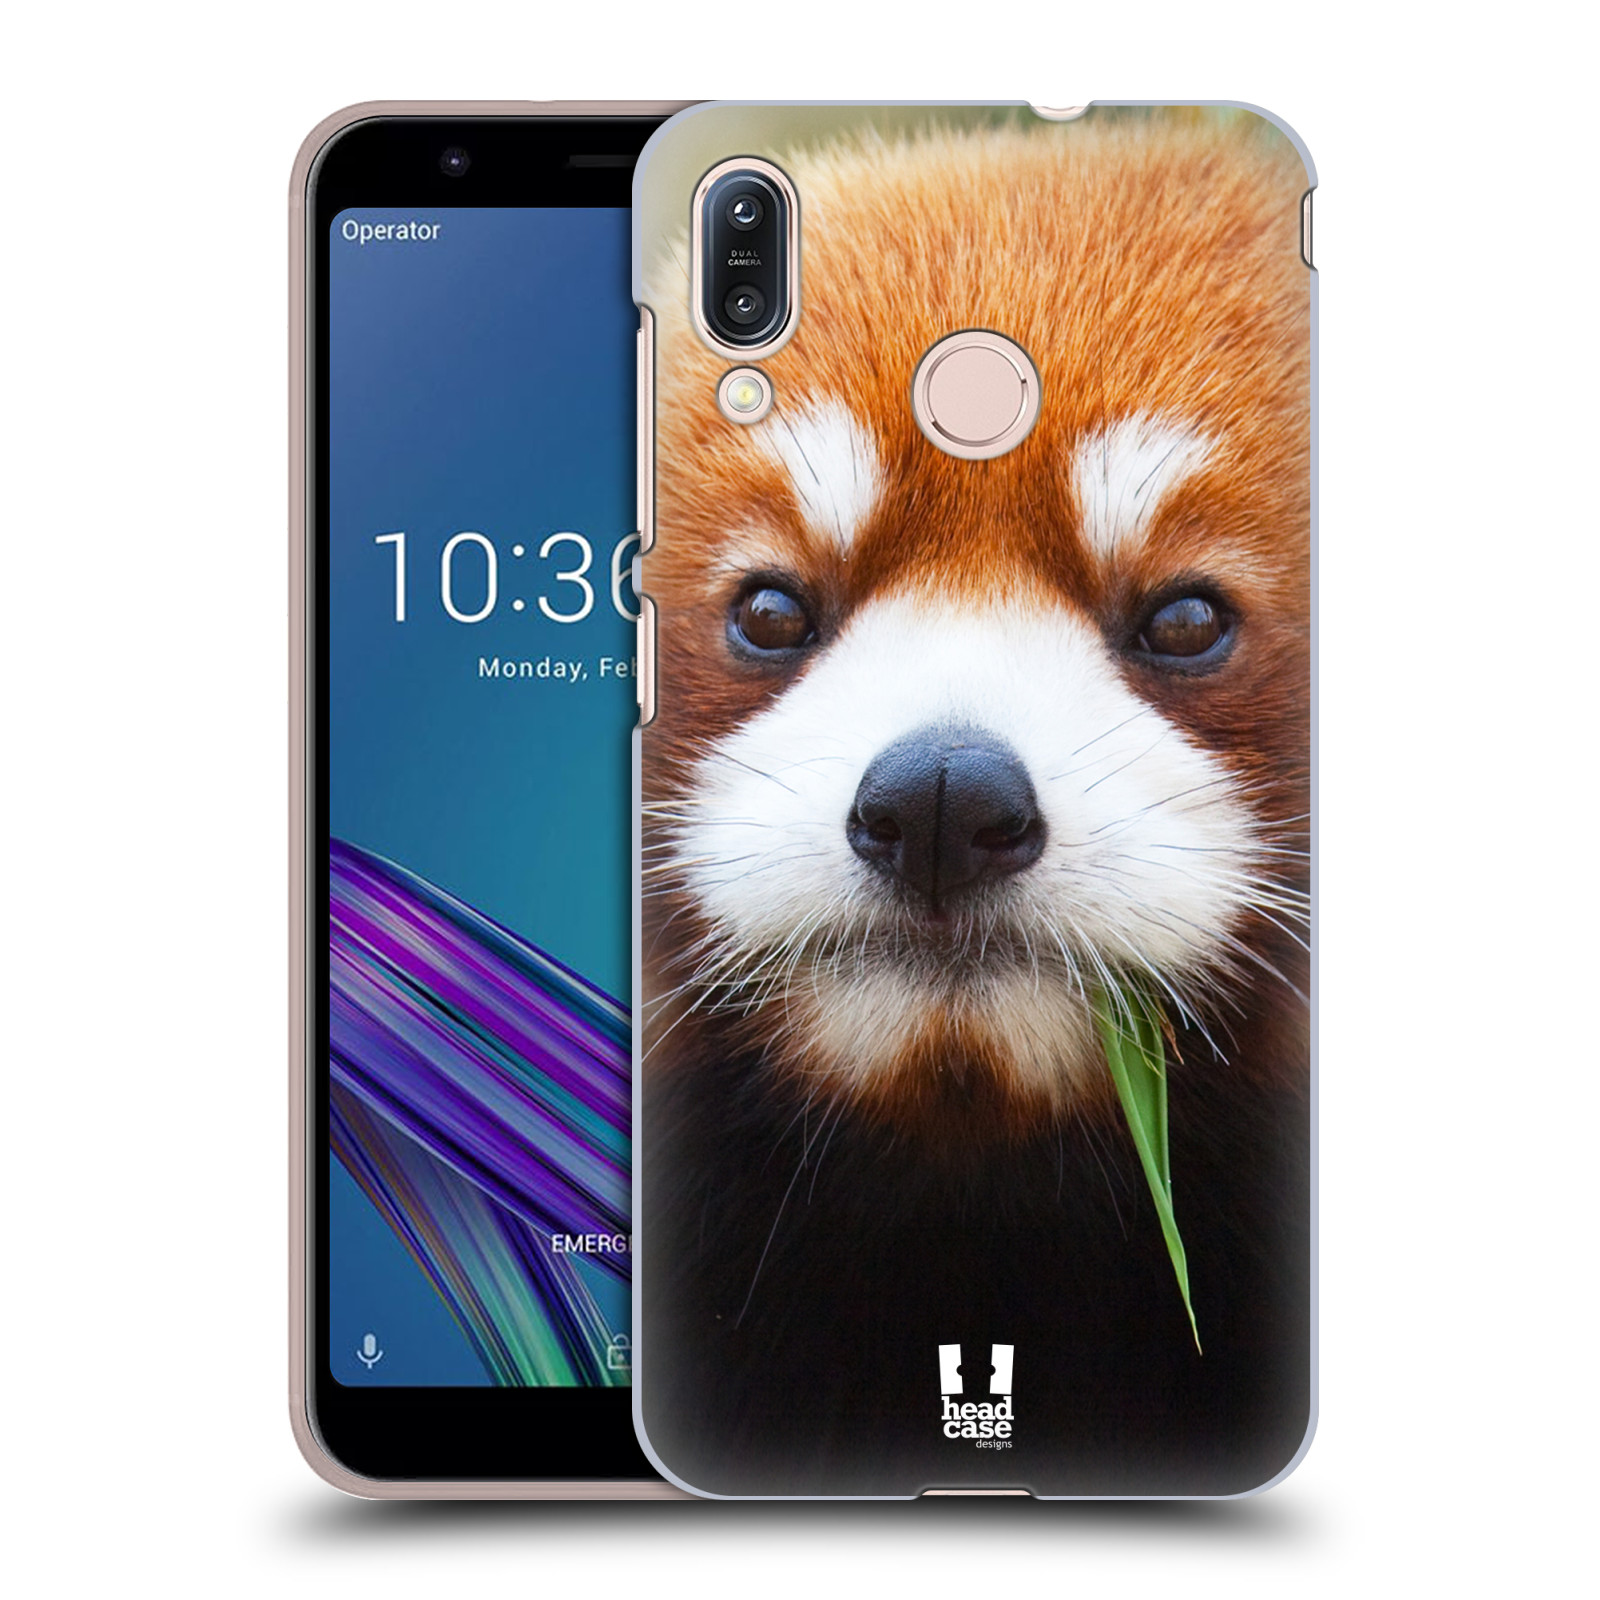 Pouzdro na mobil Asus Zenfone Max M1 (ZB555KL) - HEAD CASE - vzor Divočina, Divoký život a zvířata foto PANDA HNĚDÁ